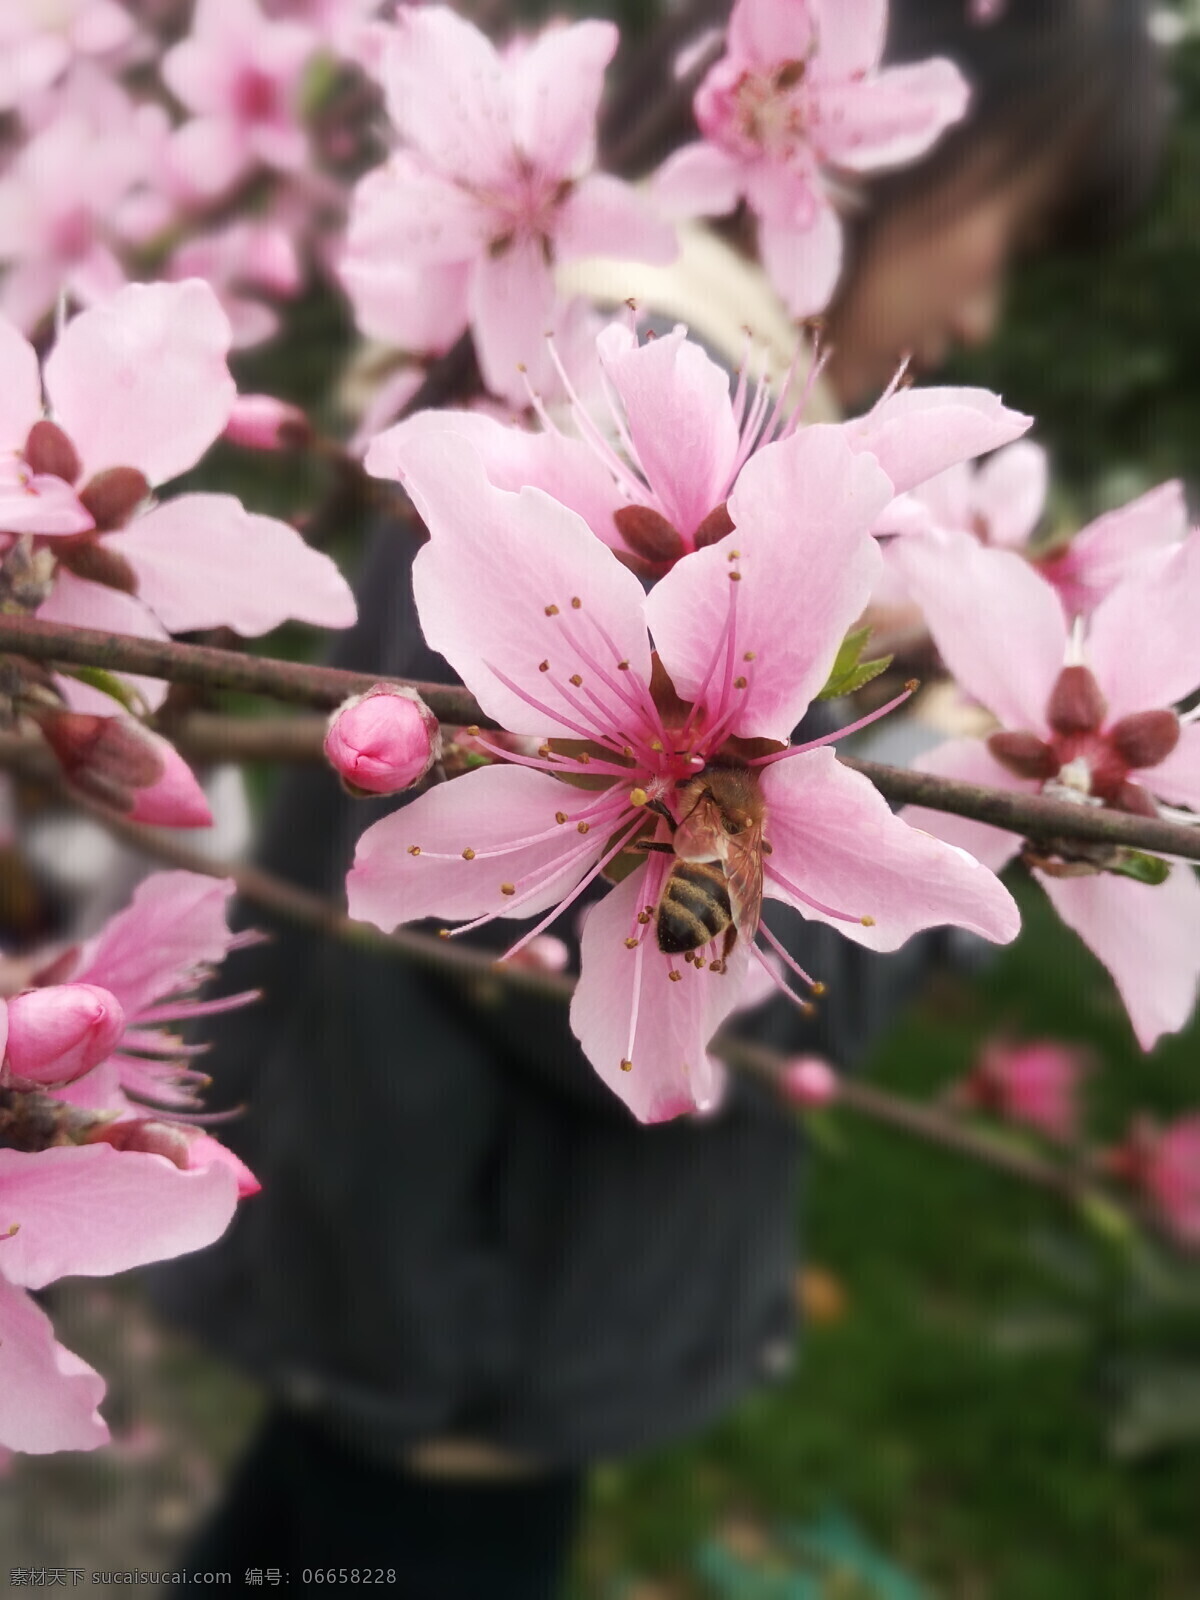 春天来了 春天 桃花 蜜蜂 清明 花 开花 粉红色的花 粉红色 小鸡 哈哈哈 采蜜 照片 生物世界 花草